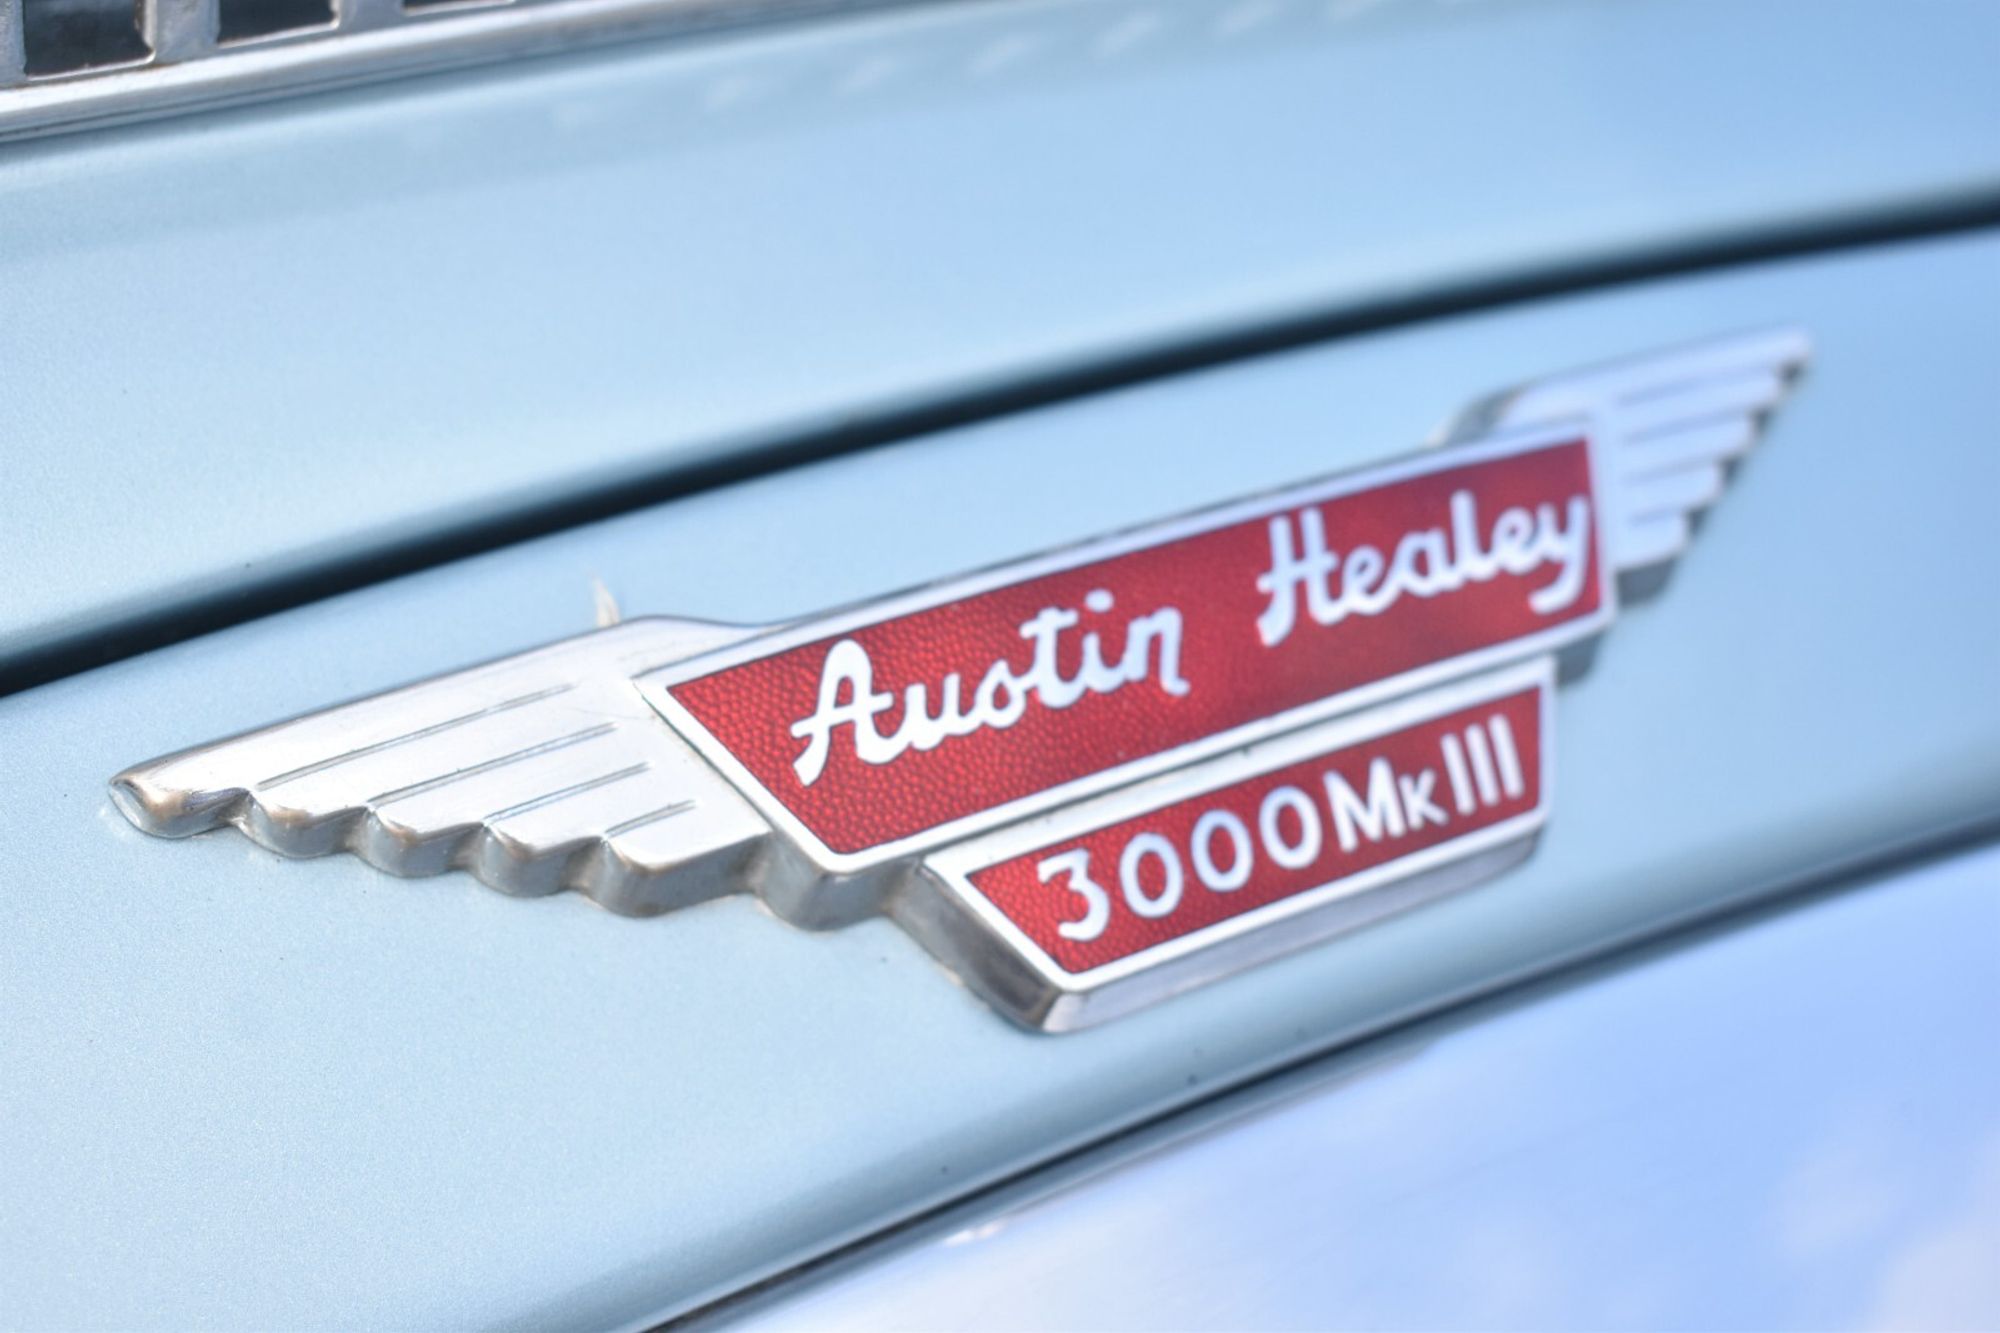 1967 Austin Healey 3000 MK111 Phase 2 